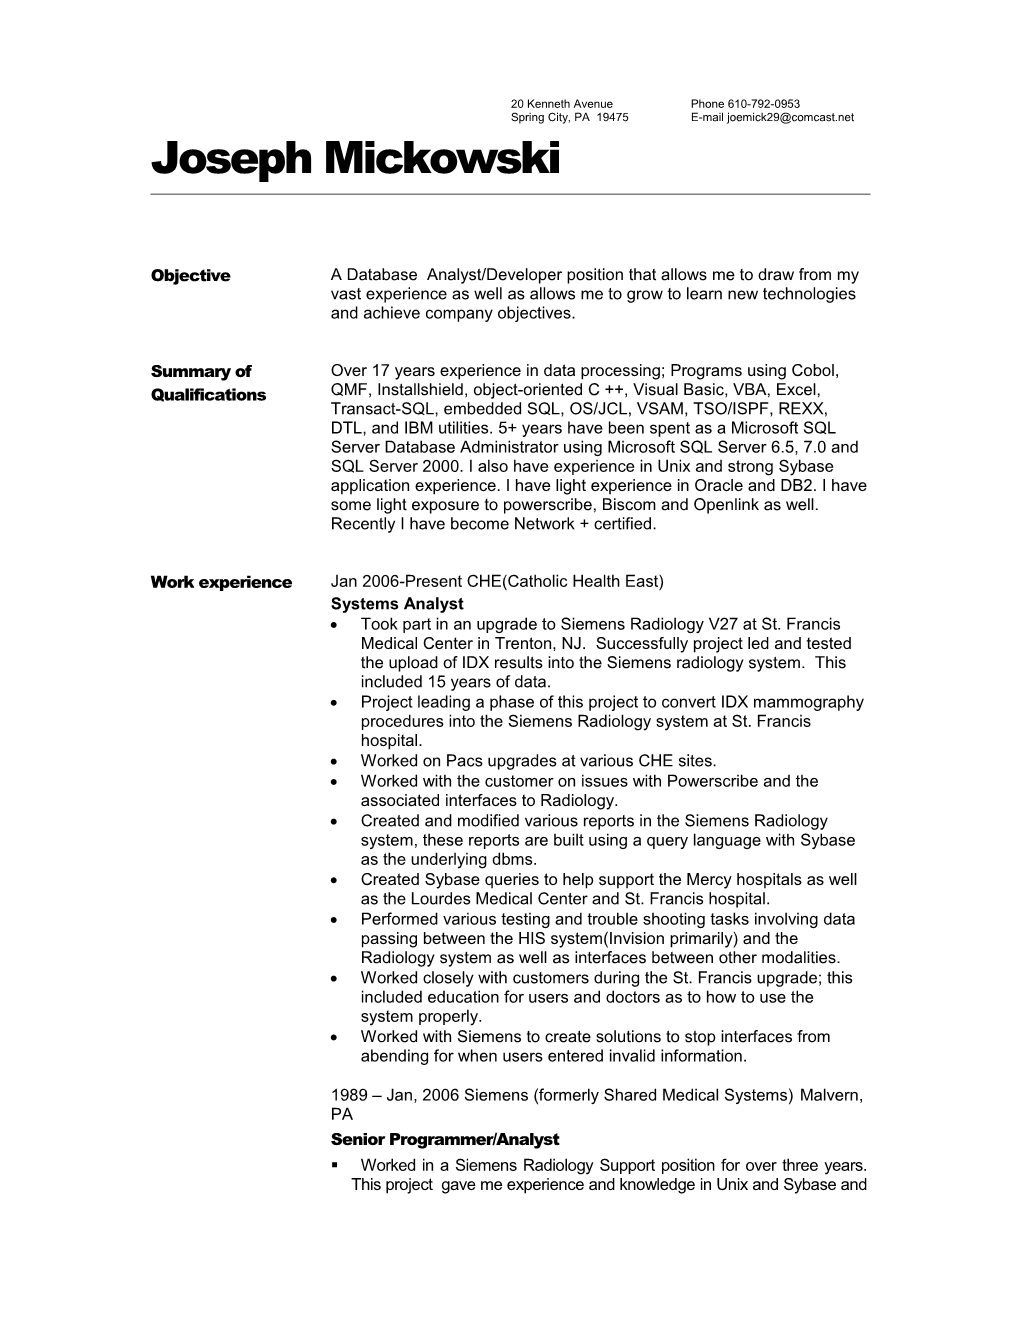 Joseph Mickowski